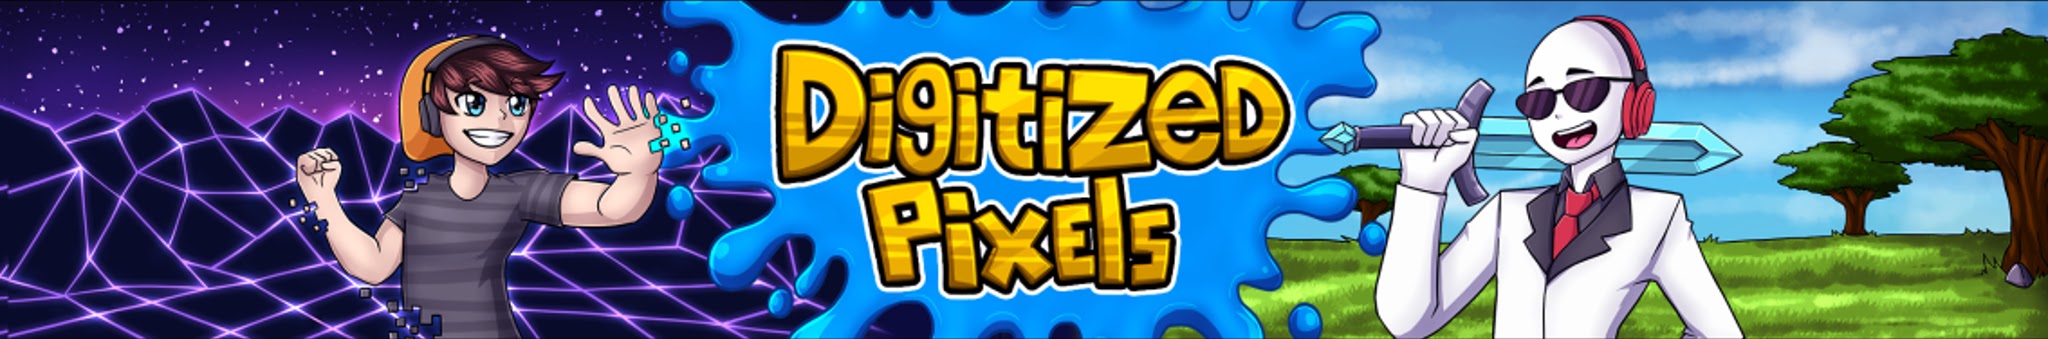 Digitizedpixels